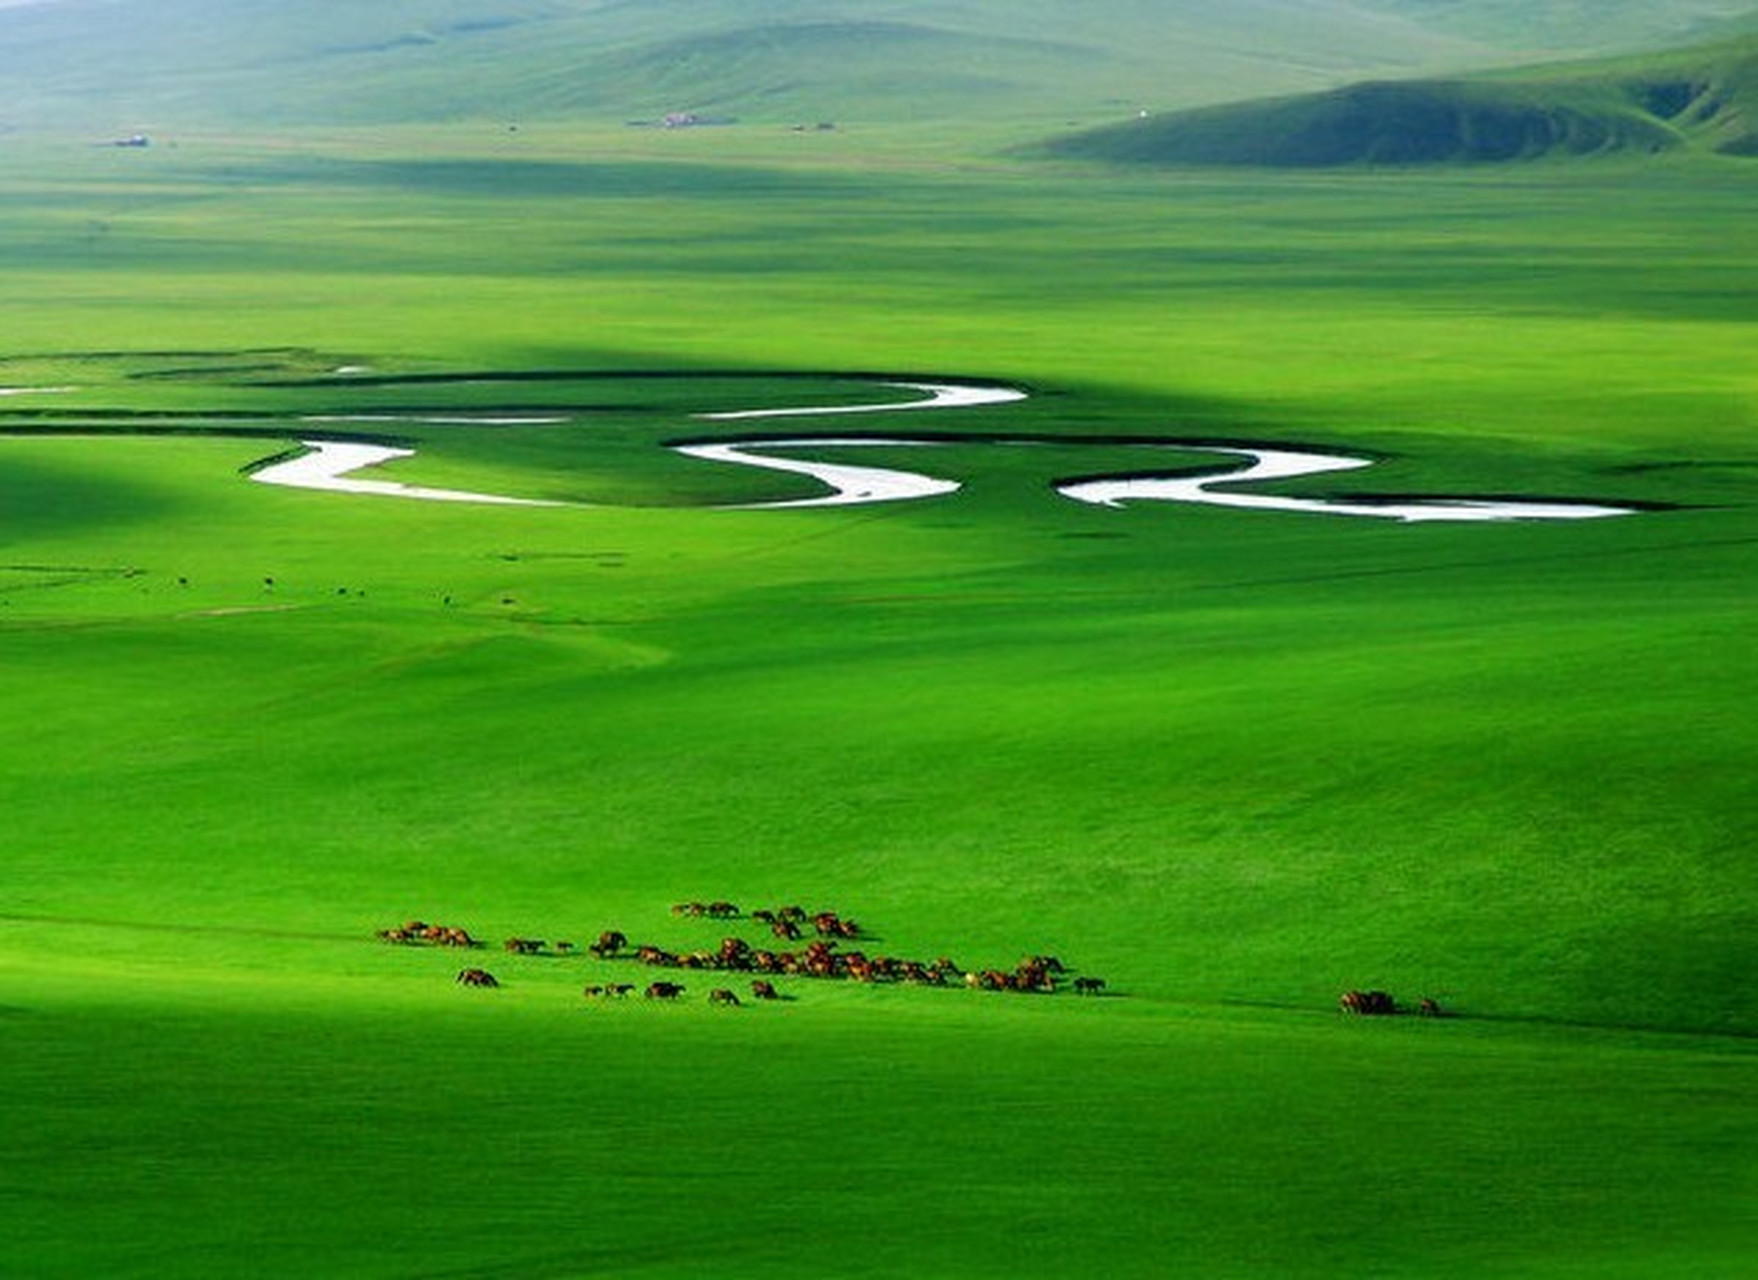 呼伦贝尔大草原是我国现存最丰美的草原牧场,拥有最纯洁的蓝天,白云和